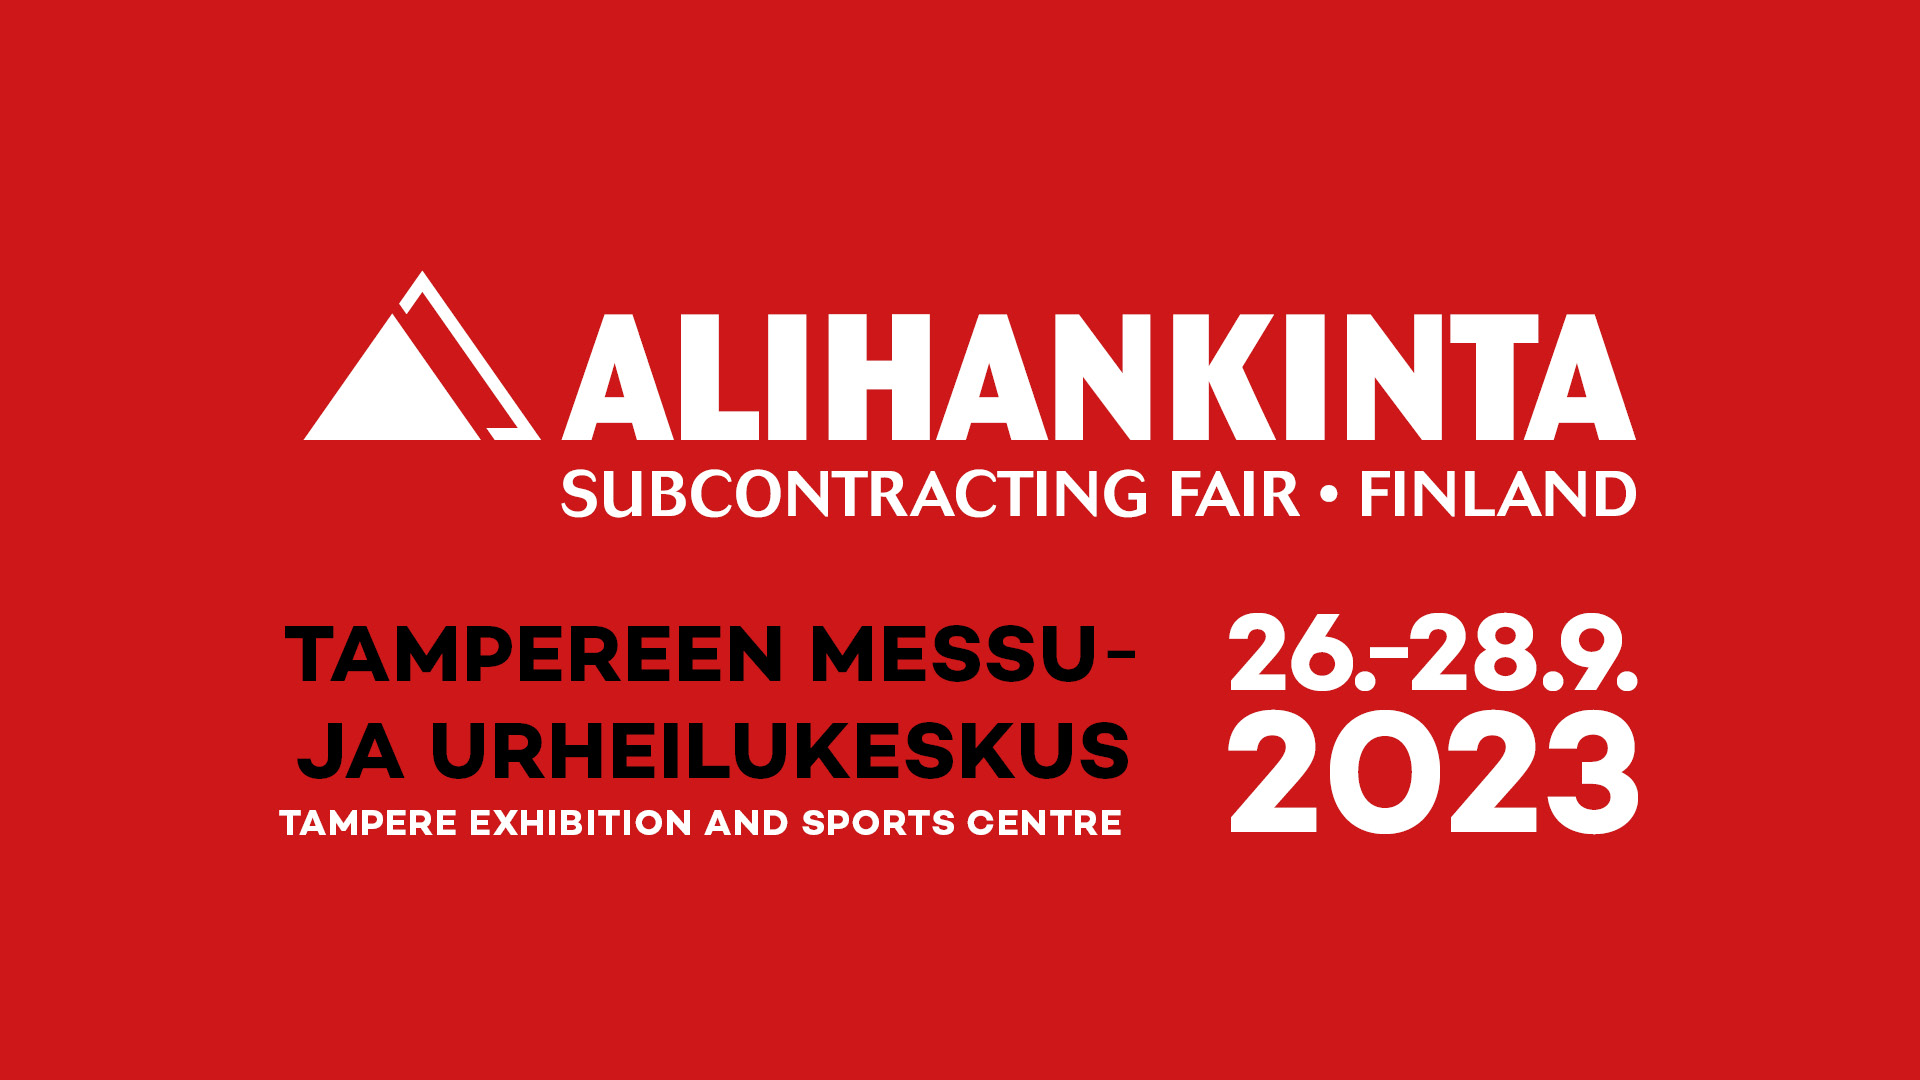 Subcontracting Fair, Alihankinta 2023 logo